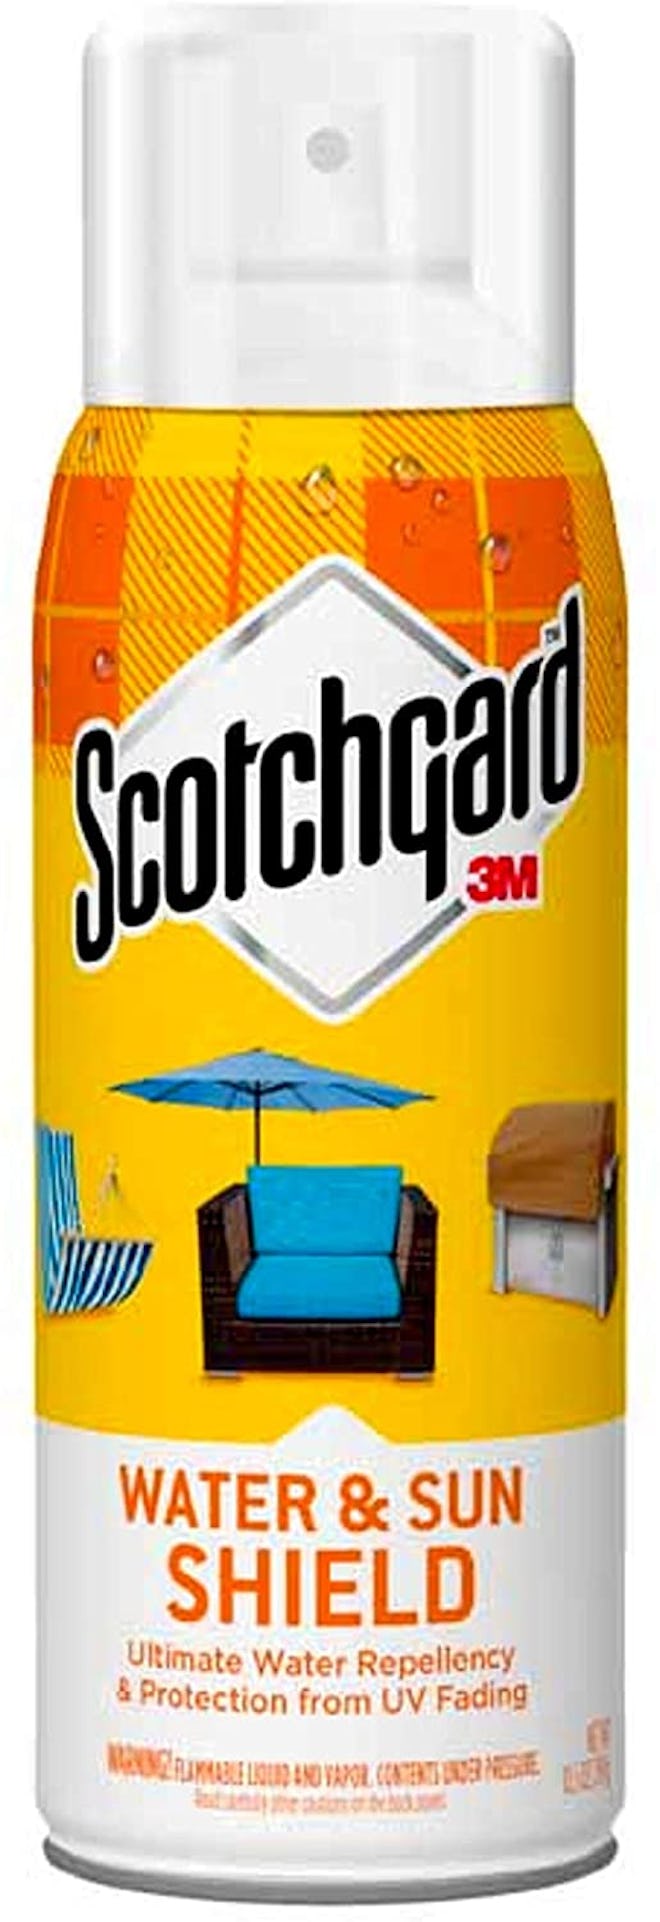 Scotchgard Water and Sun Shield